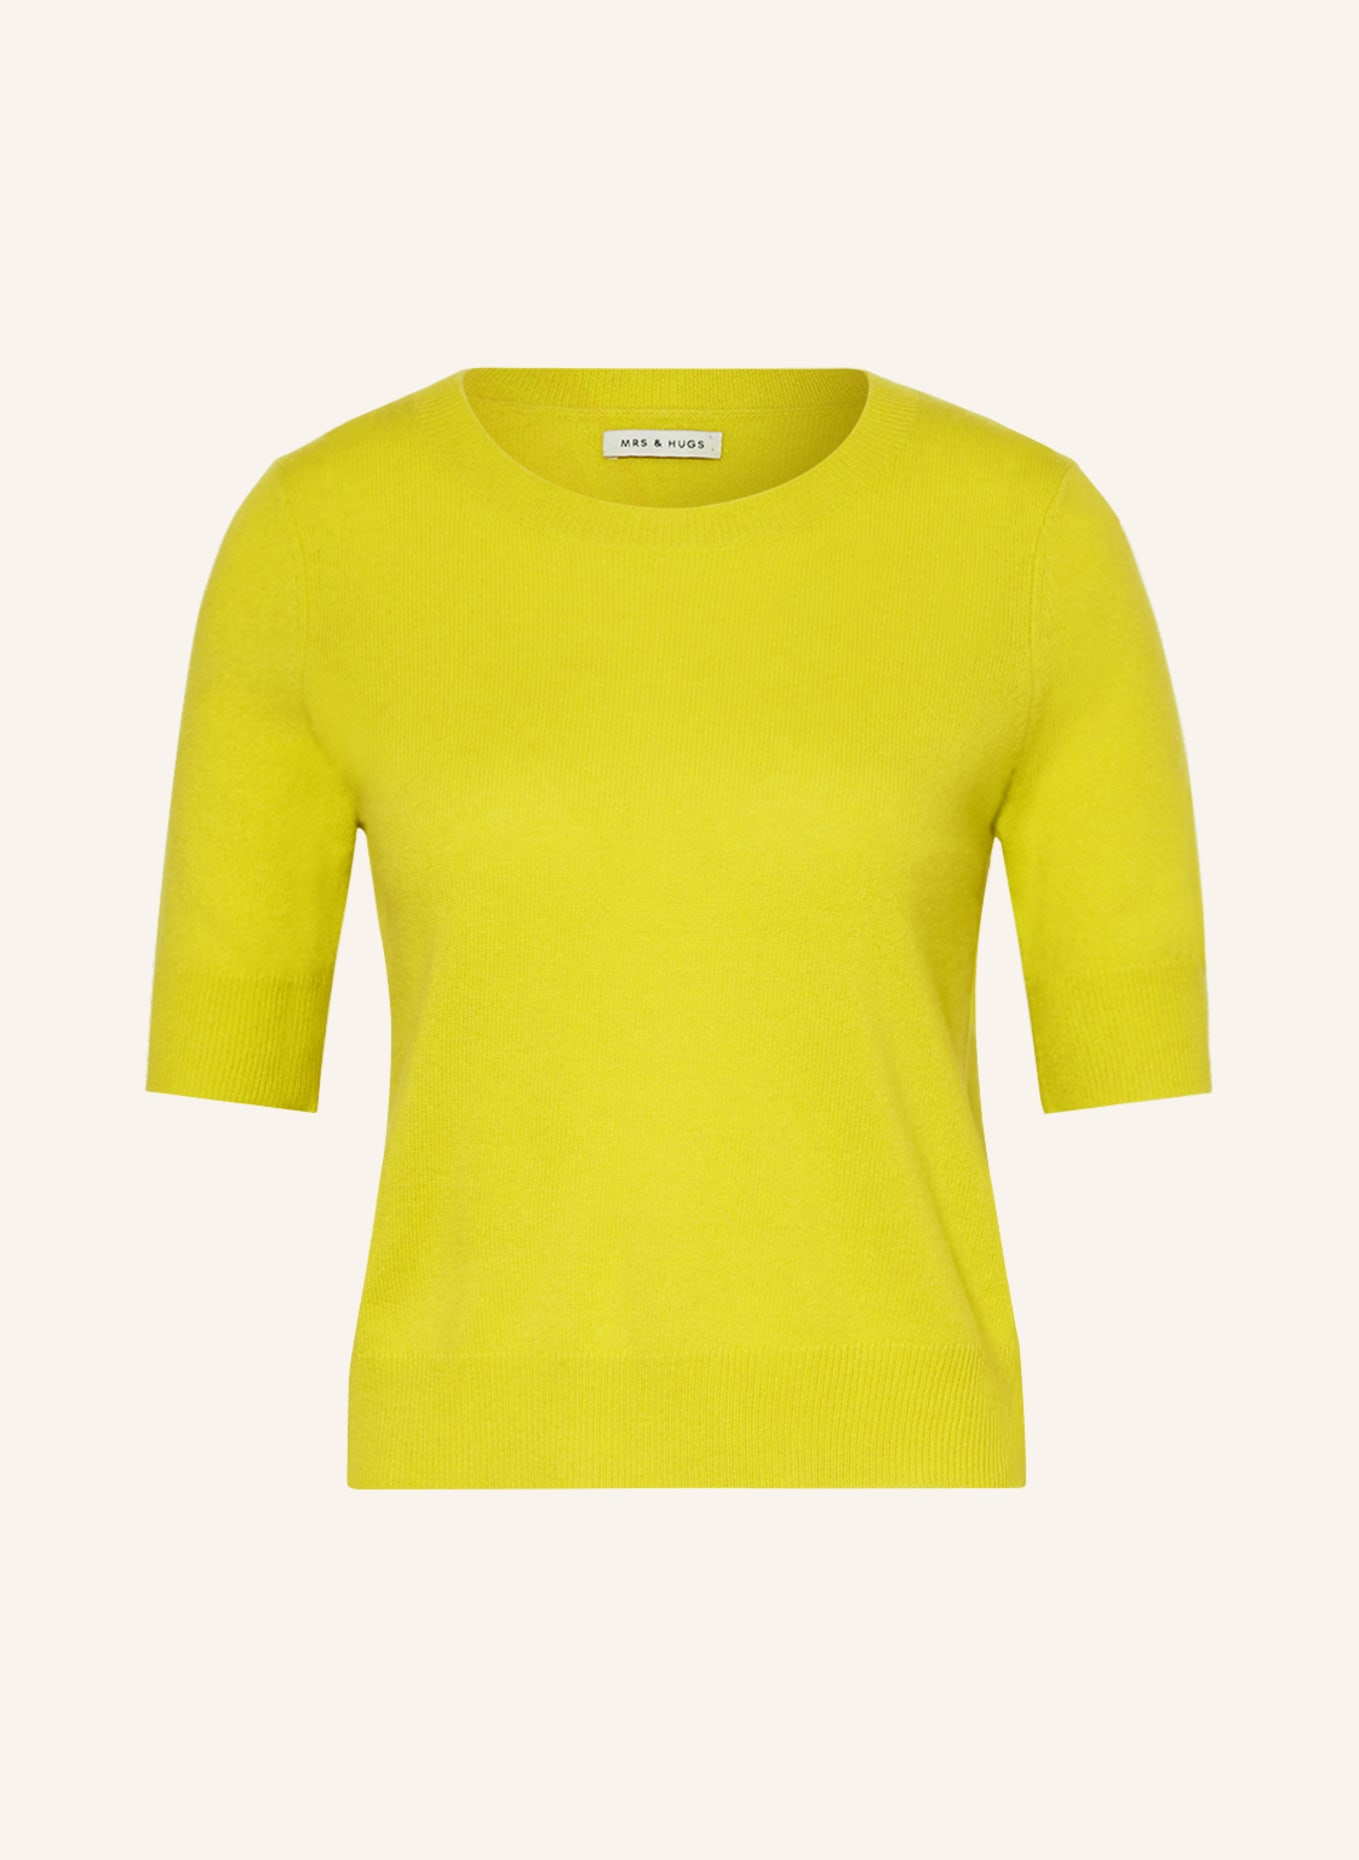 MRS & HUGS Strickshirt aus Cashmere, Farbe: GELB (Bild 1)